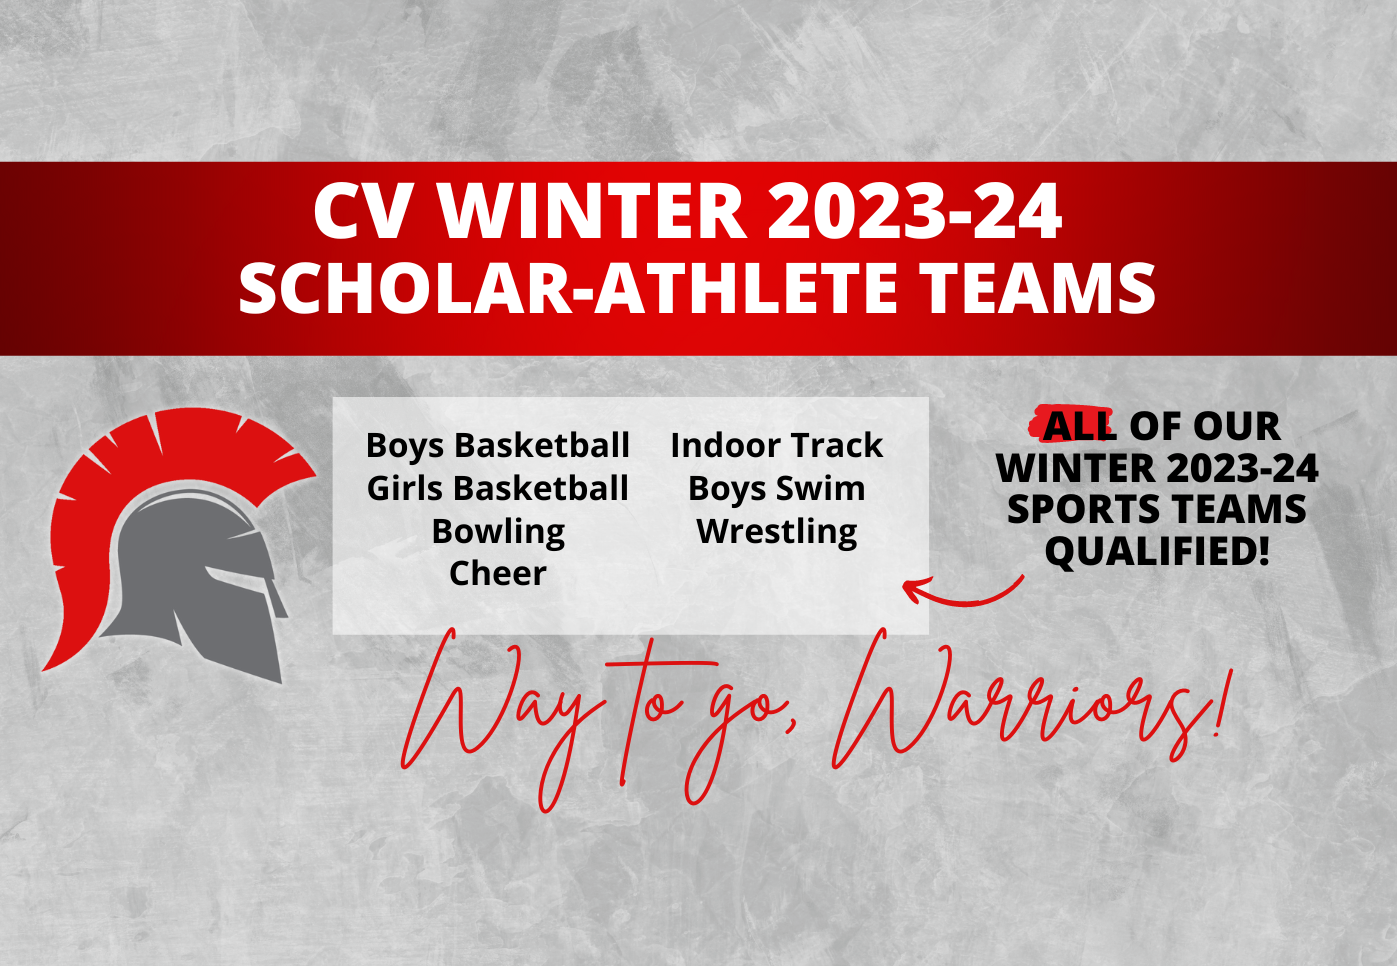 C V Winter 2023-24 Scholar-Athlete Teams